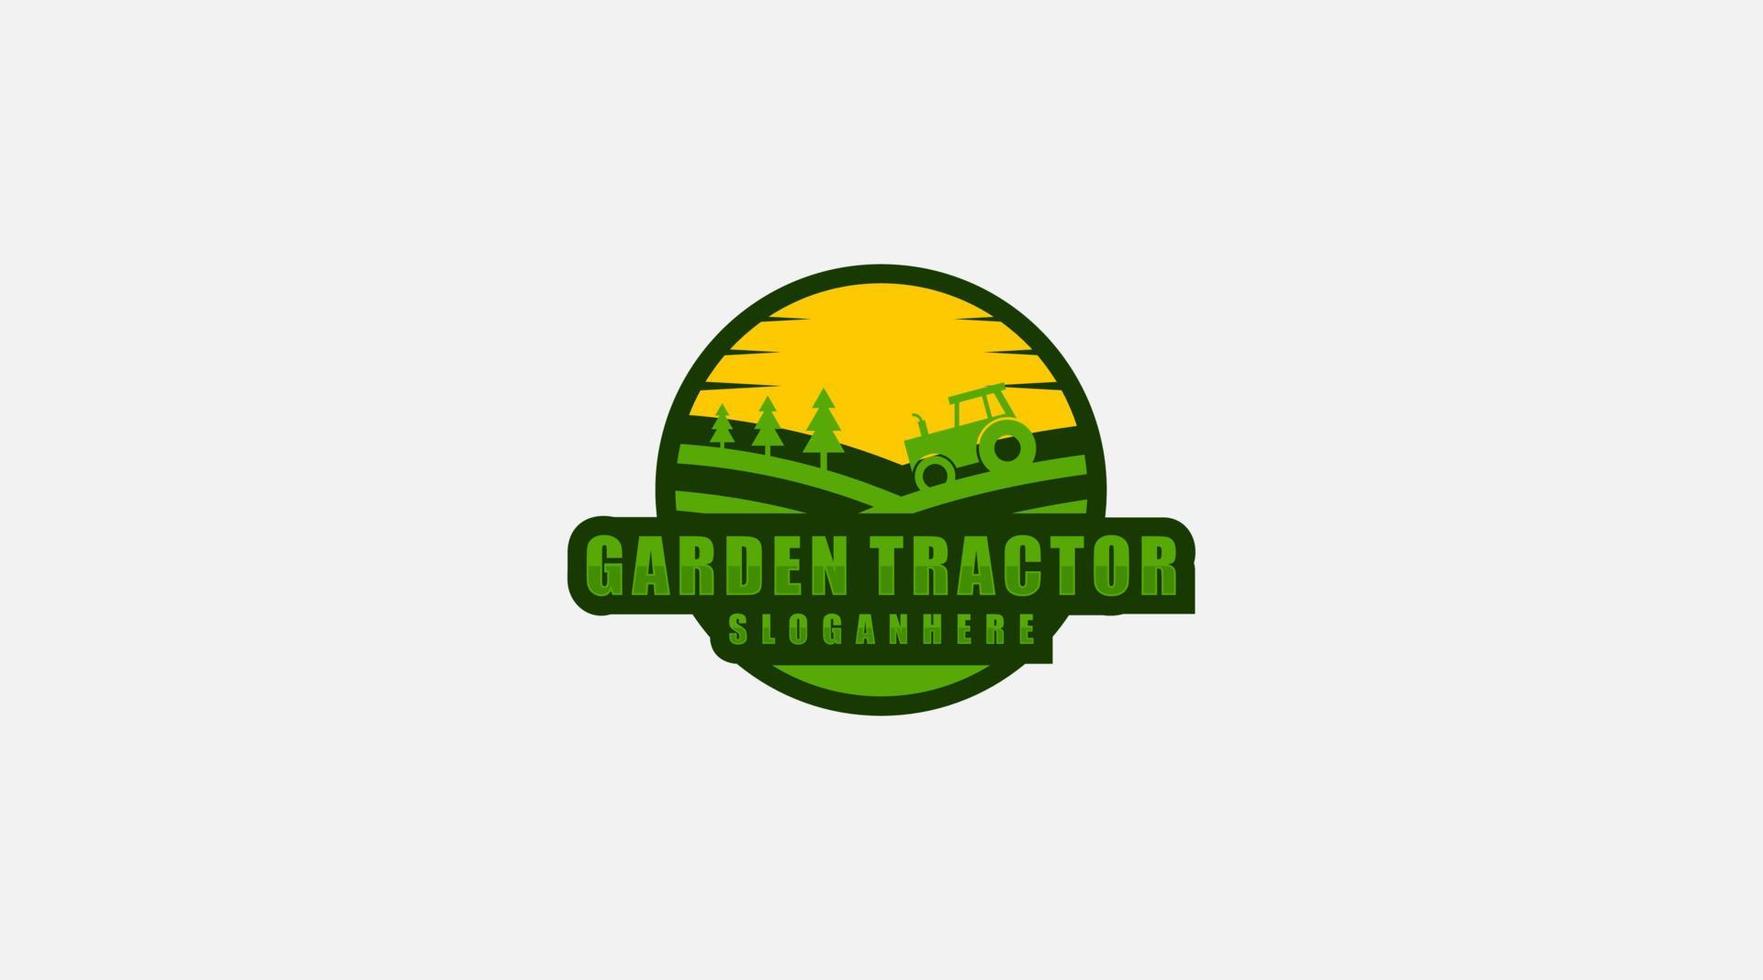 Garden tractor construction machine logo design template vector. vector